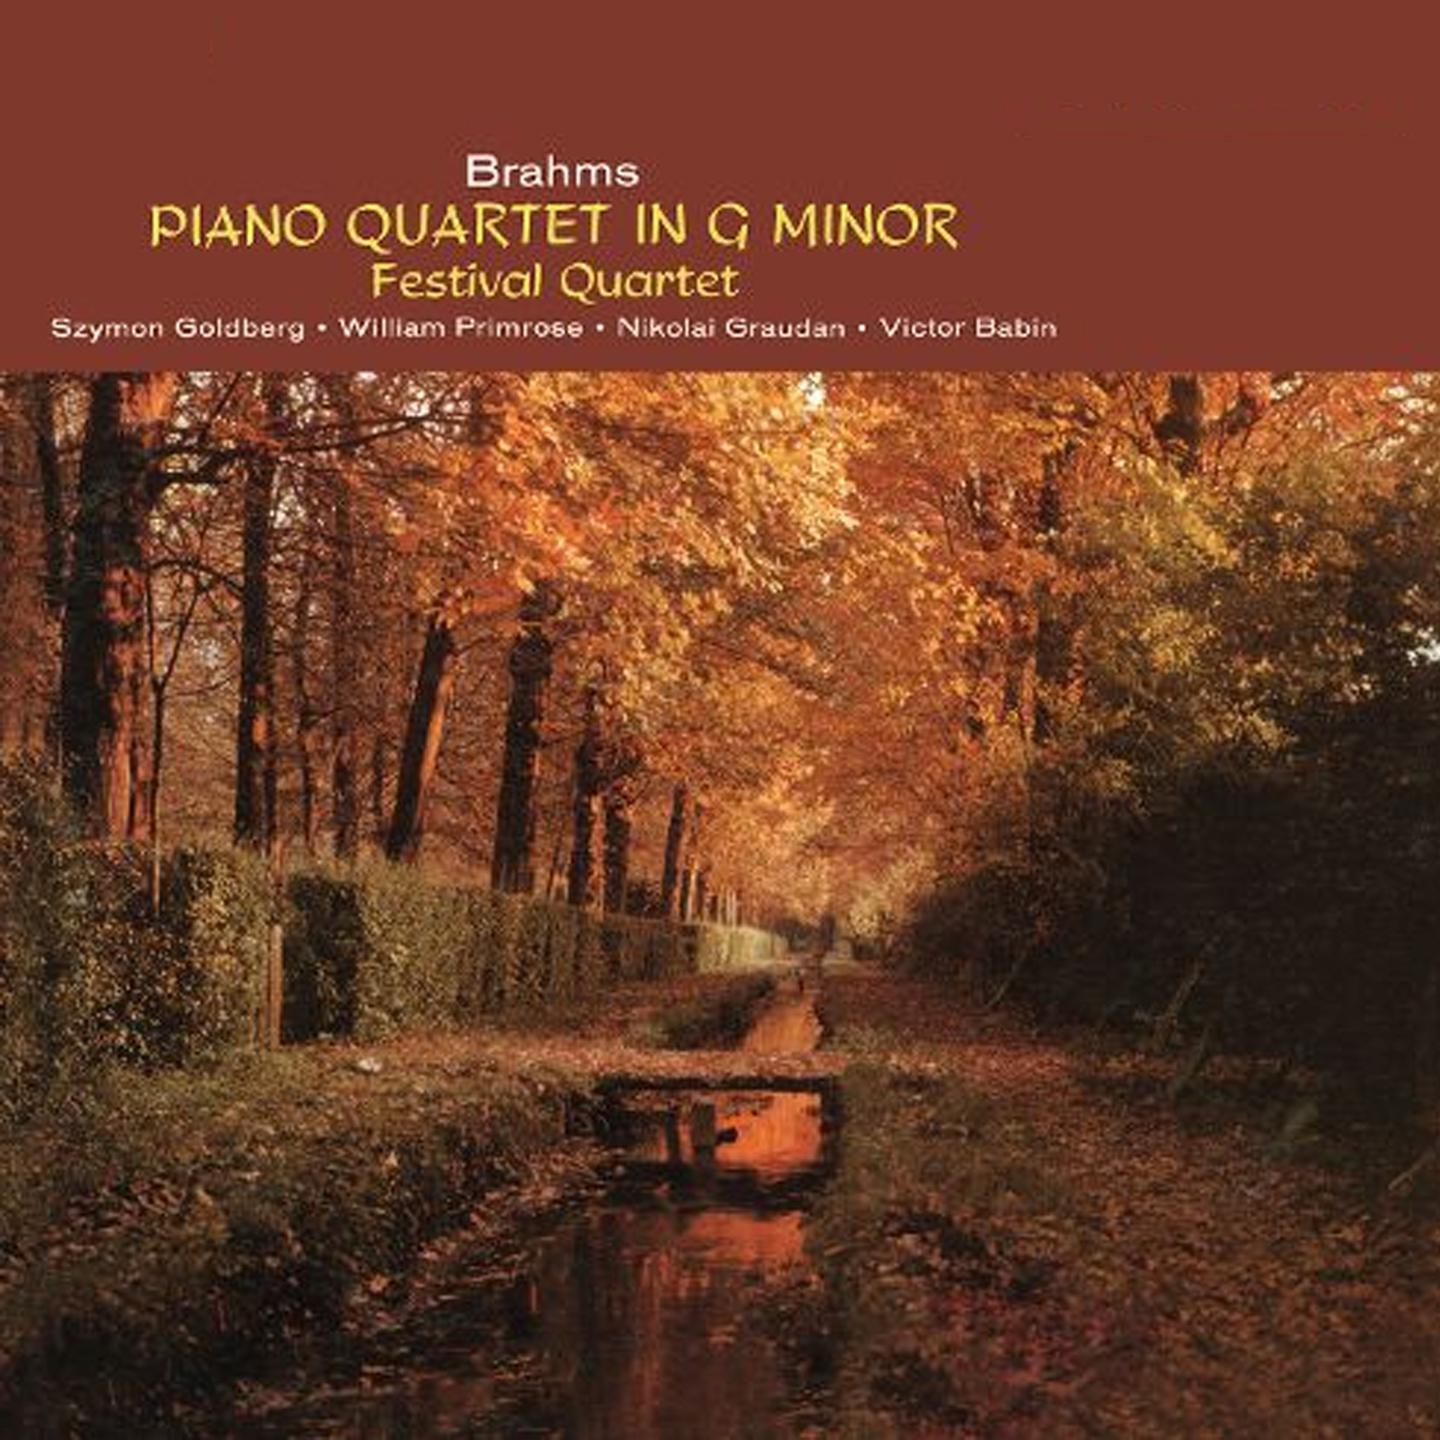 The Festival Quartet - Brahms Piano Quartet In G Minor